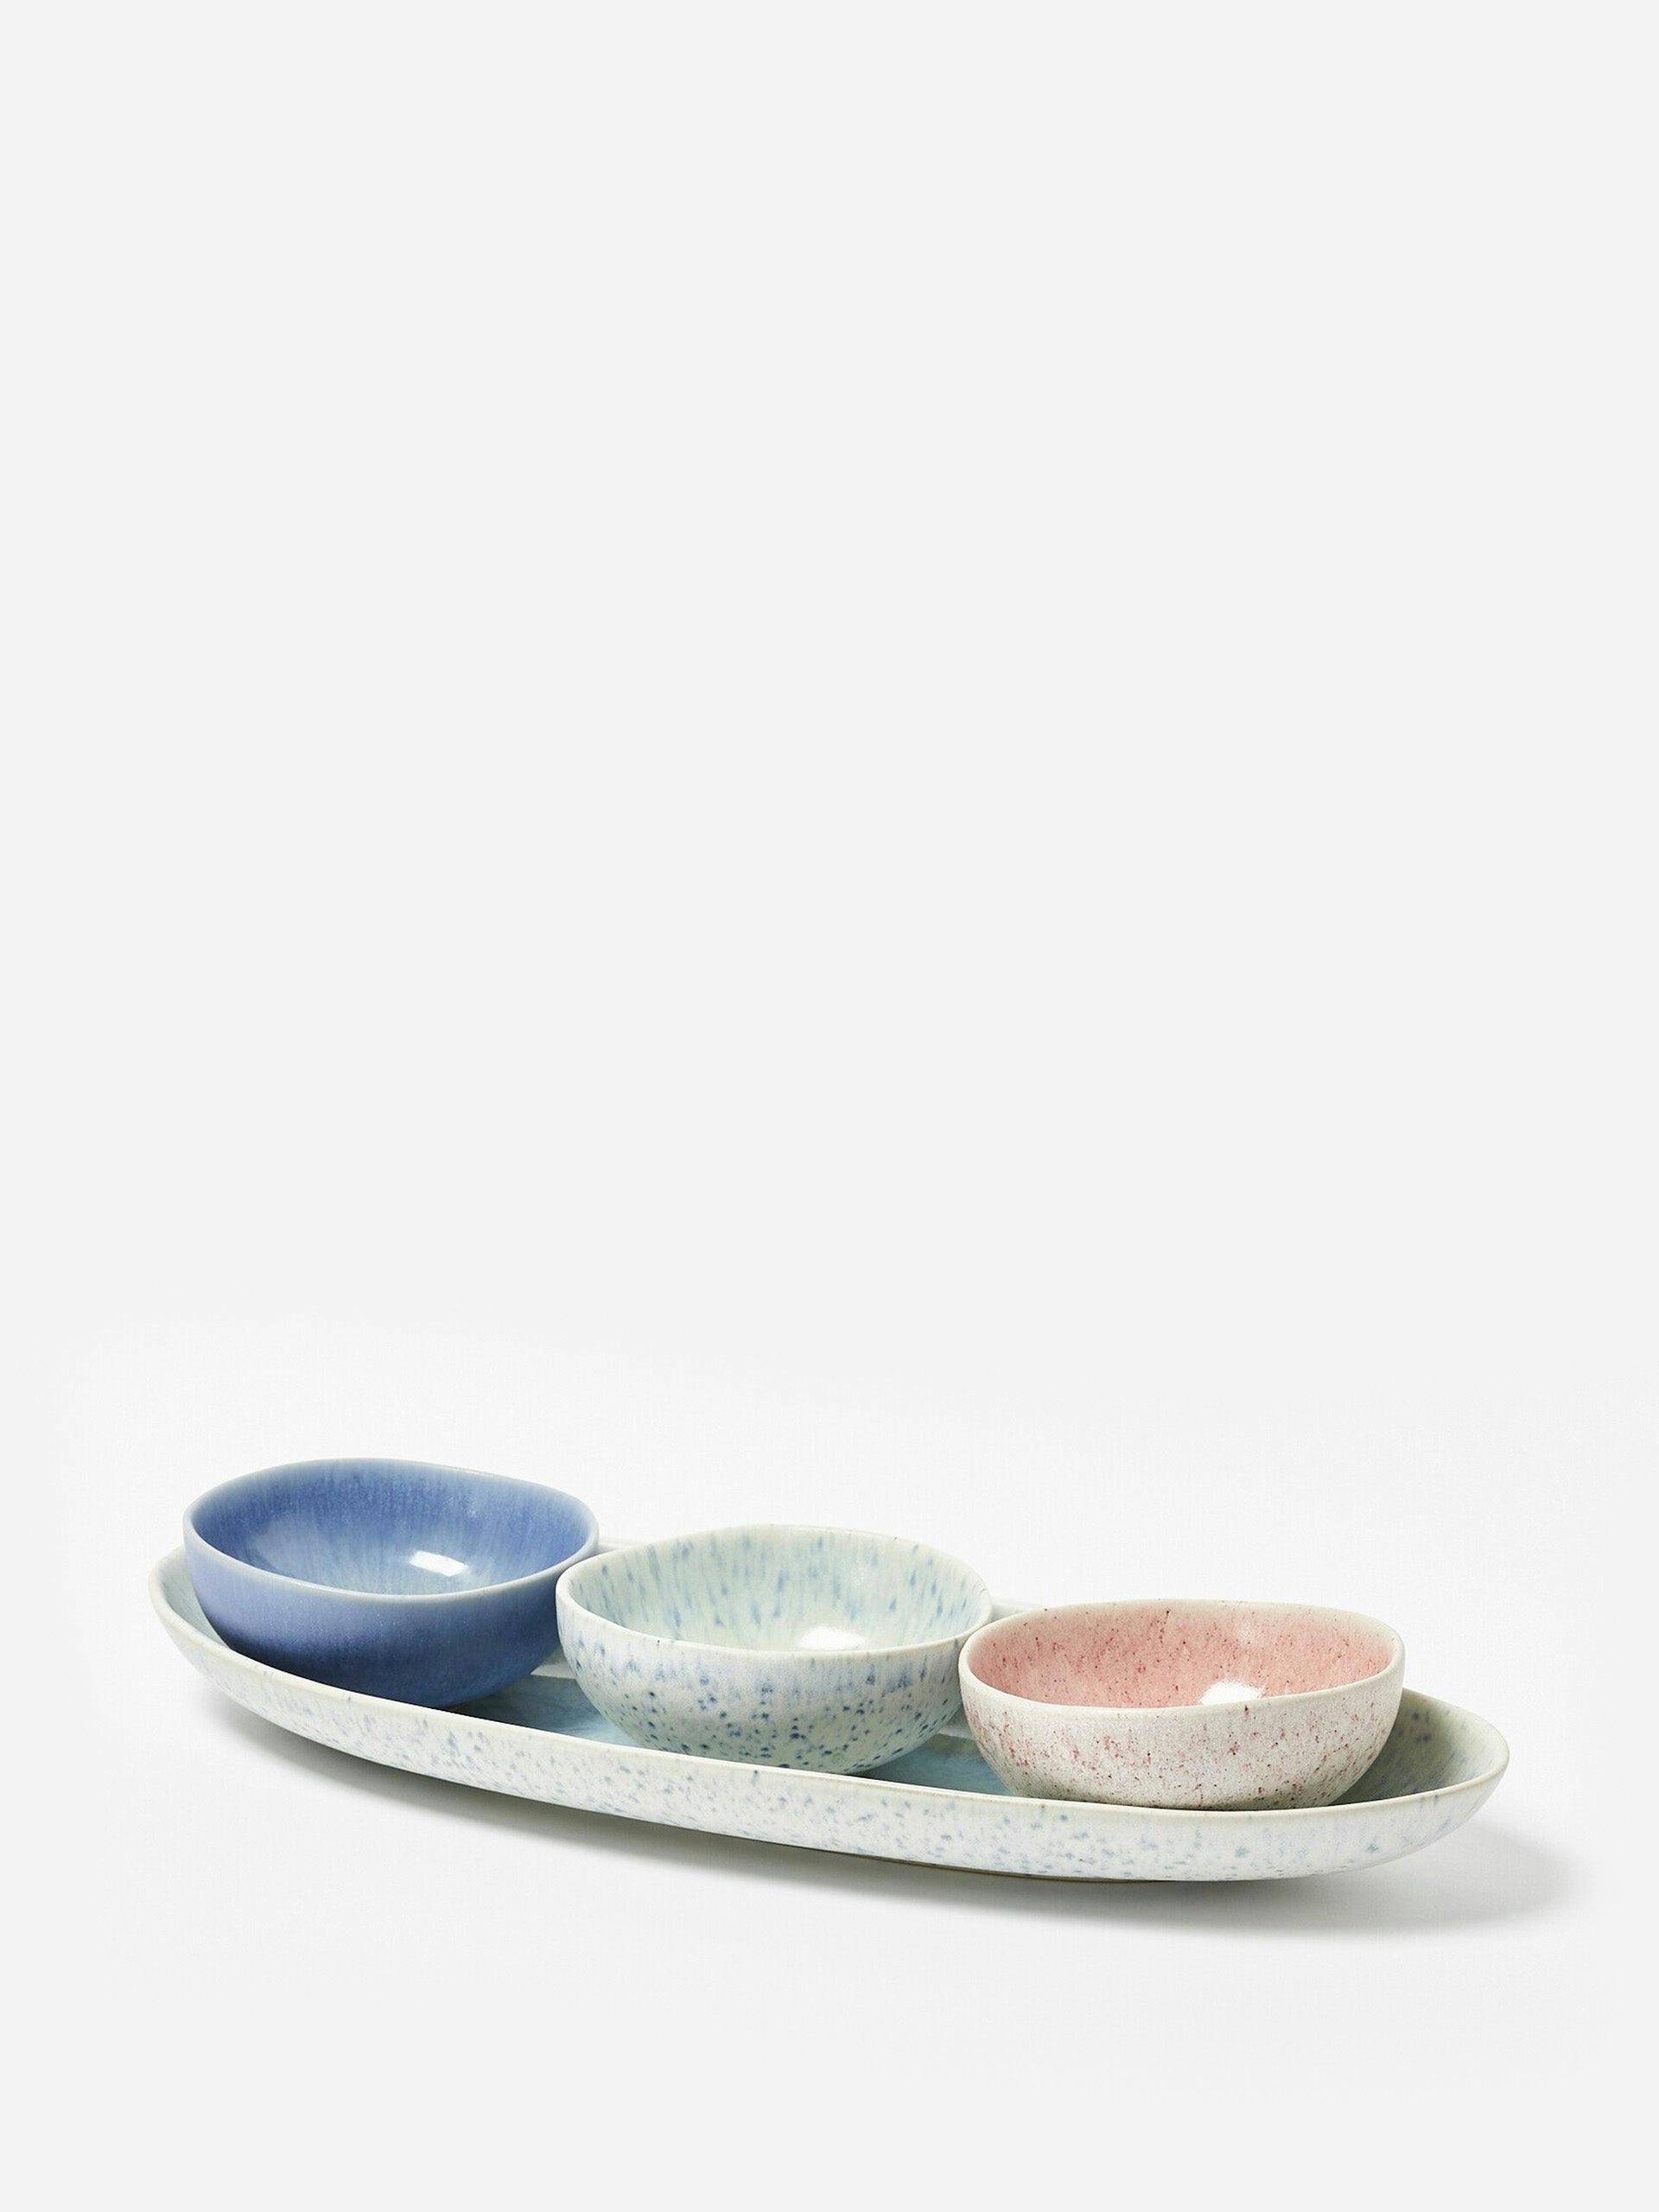 Sita ceramic nibble bowls & tray